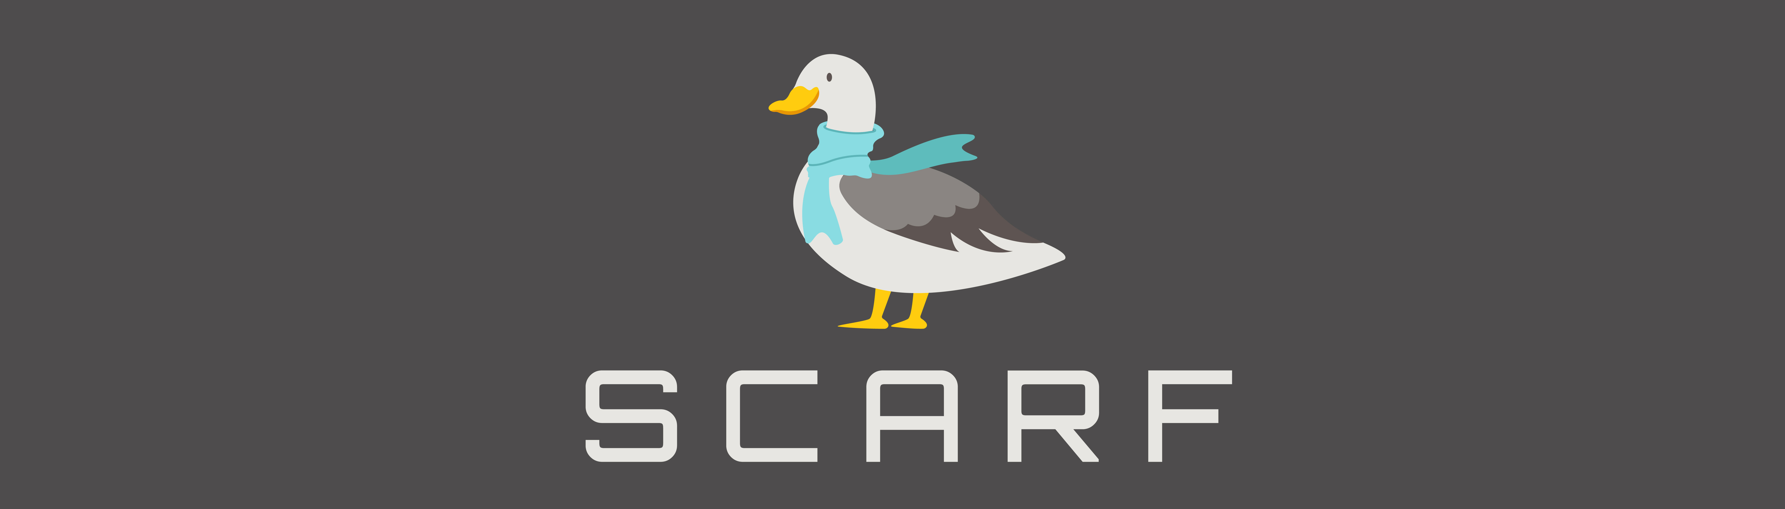 Scarf-logo.png